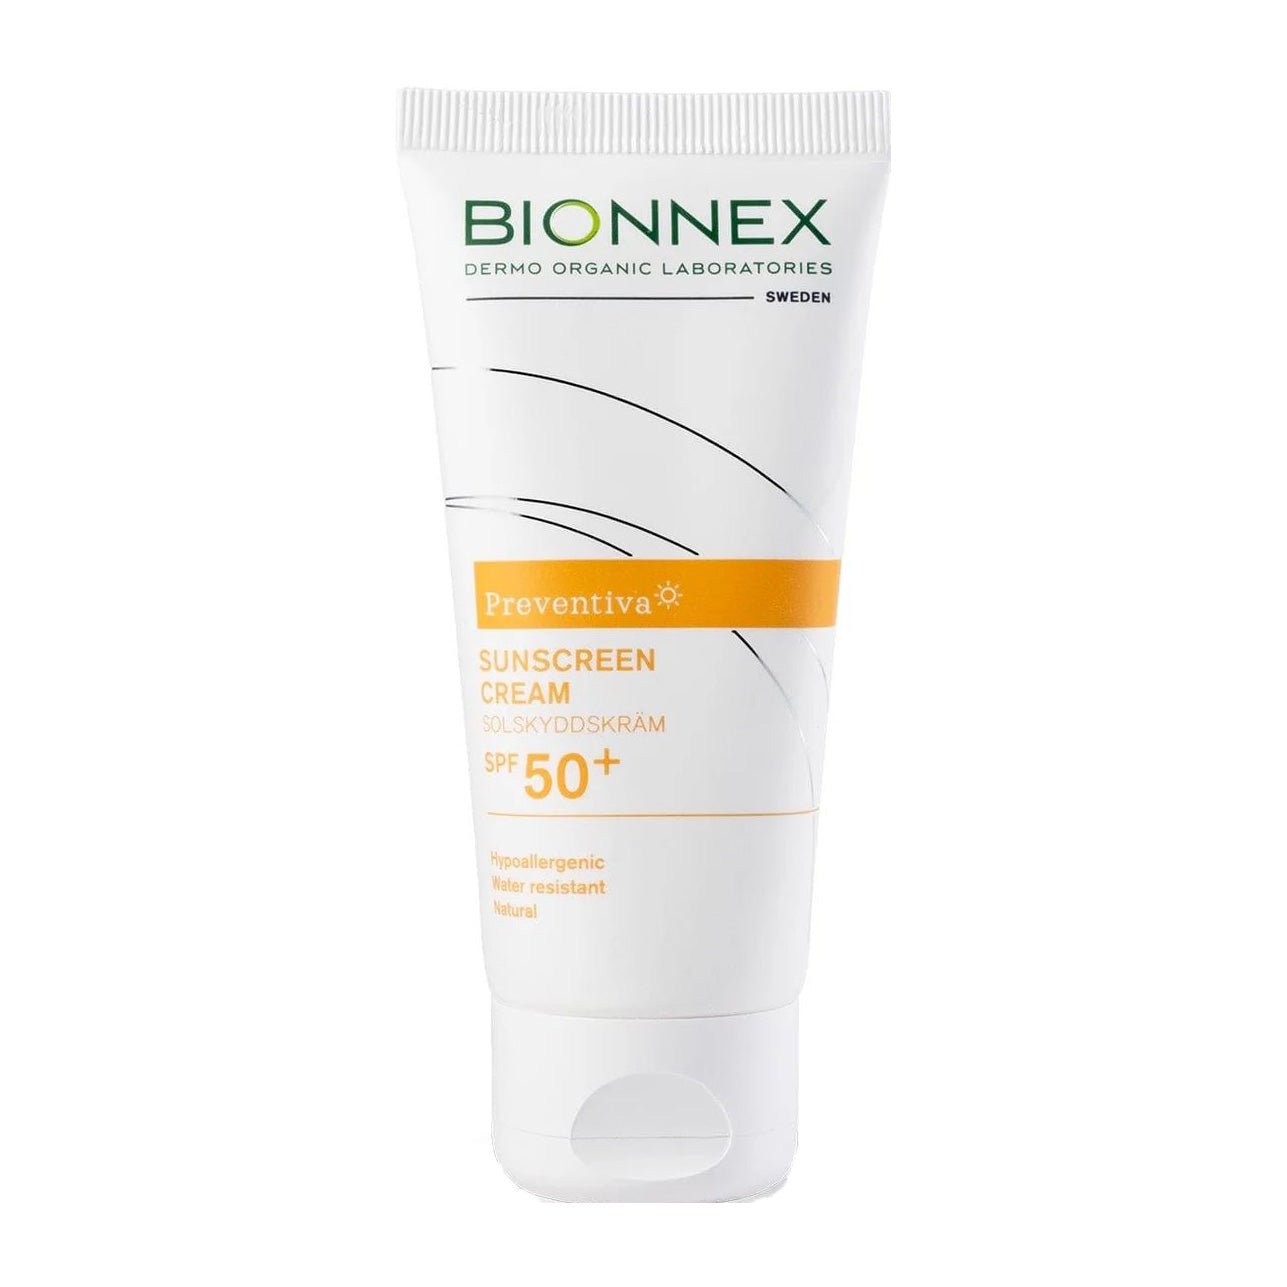 Bionnex Preventiva Sunscreen Cream SPF 50+ - 50ml - Bloom Pharmacy